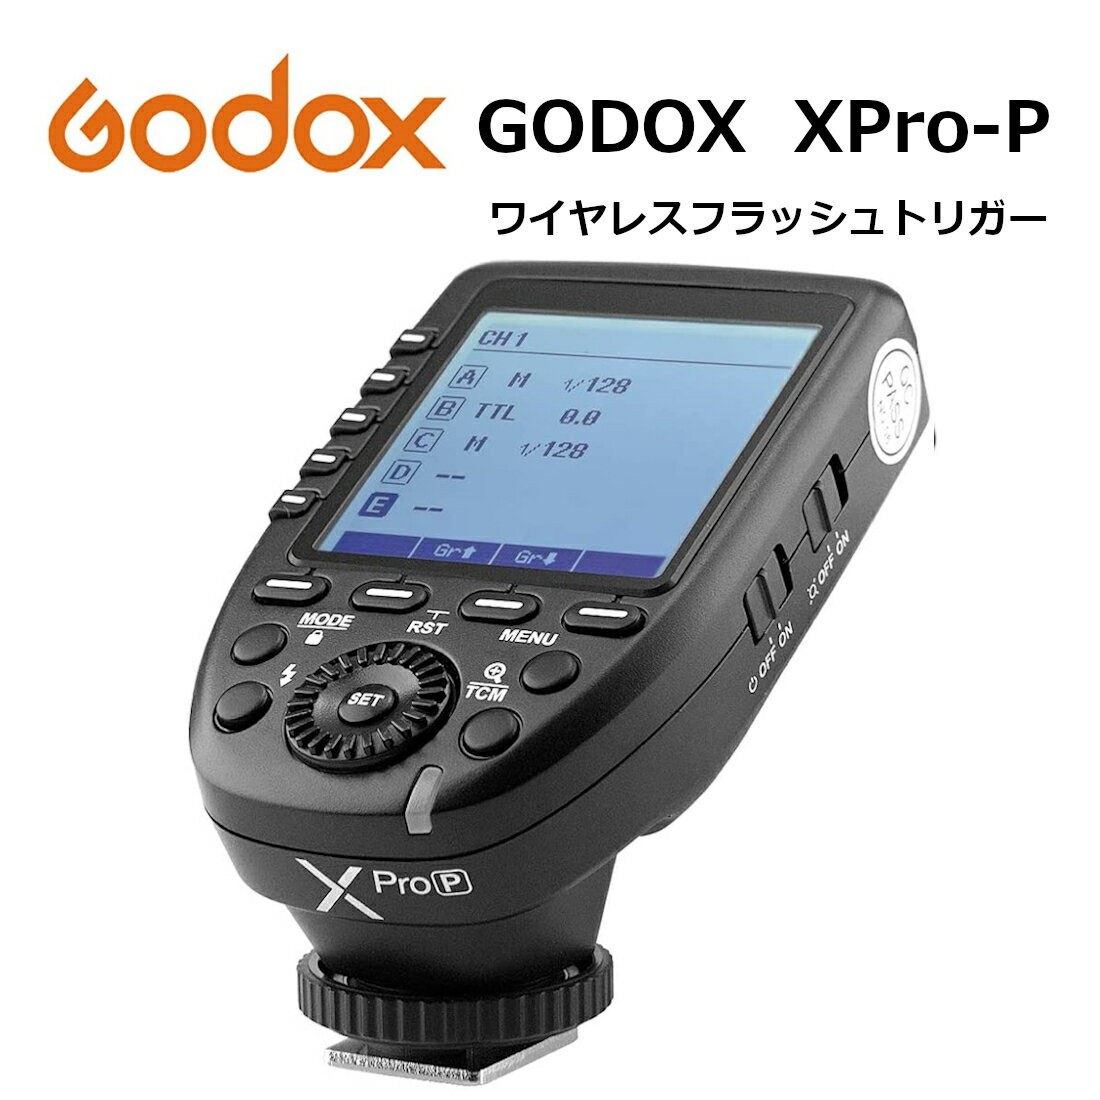 日本正規代理店 Godox Xpro-P PENTAX 送信機 TTL 2.4Gワイヤレスフラッシュトリガー 高速同期 1/8000s 大画面 LCD スクリーントランスミッタ 互換性 ペンタックス カメラ用